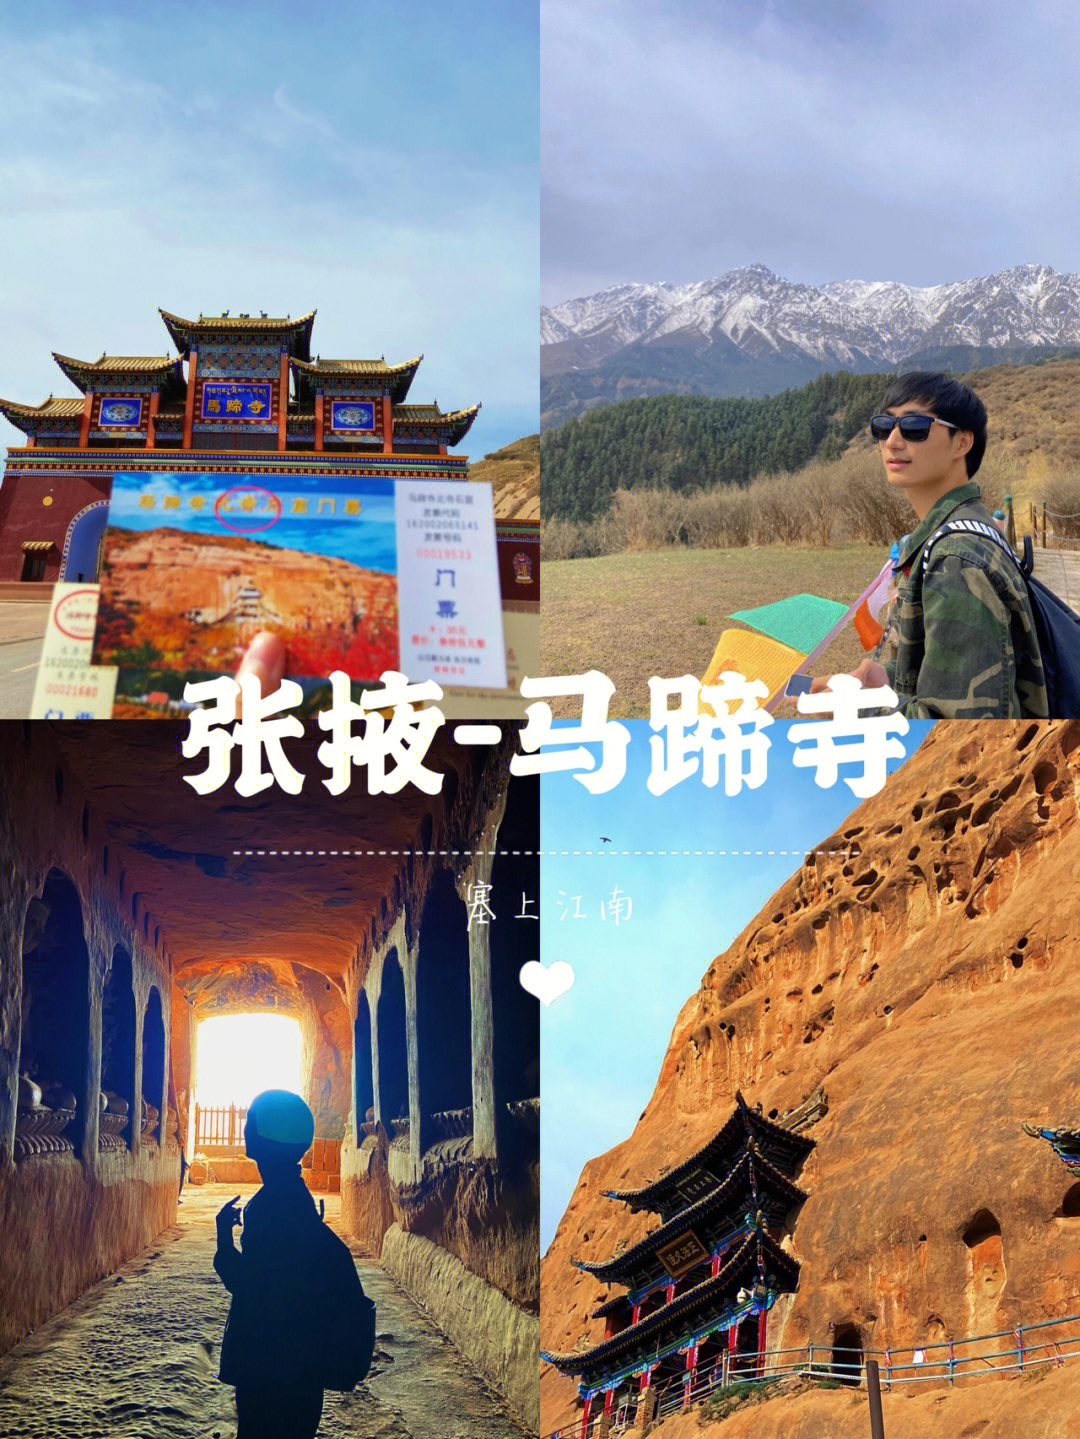 旅途中小惊喜莫过于马蹄寺,北距张掖市市区65公里,始建于北凉